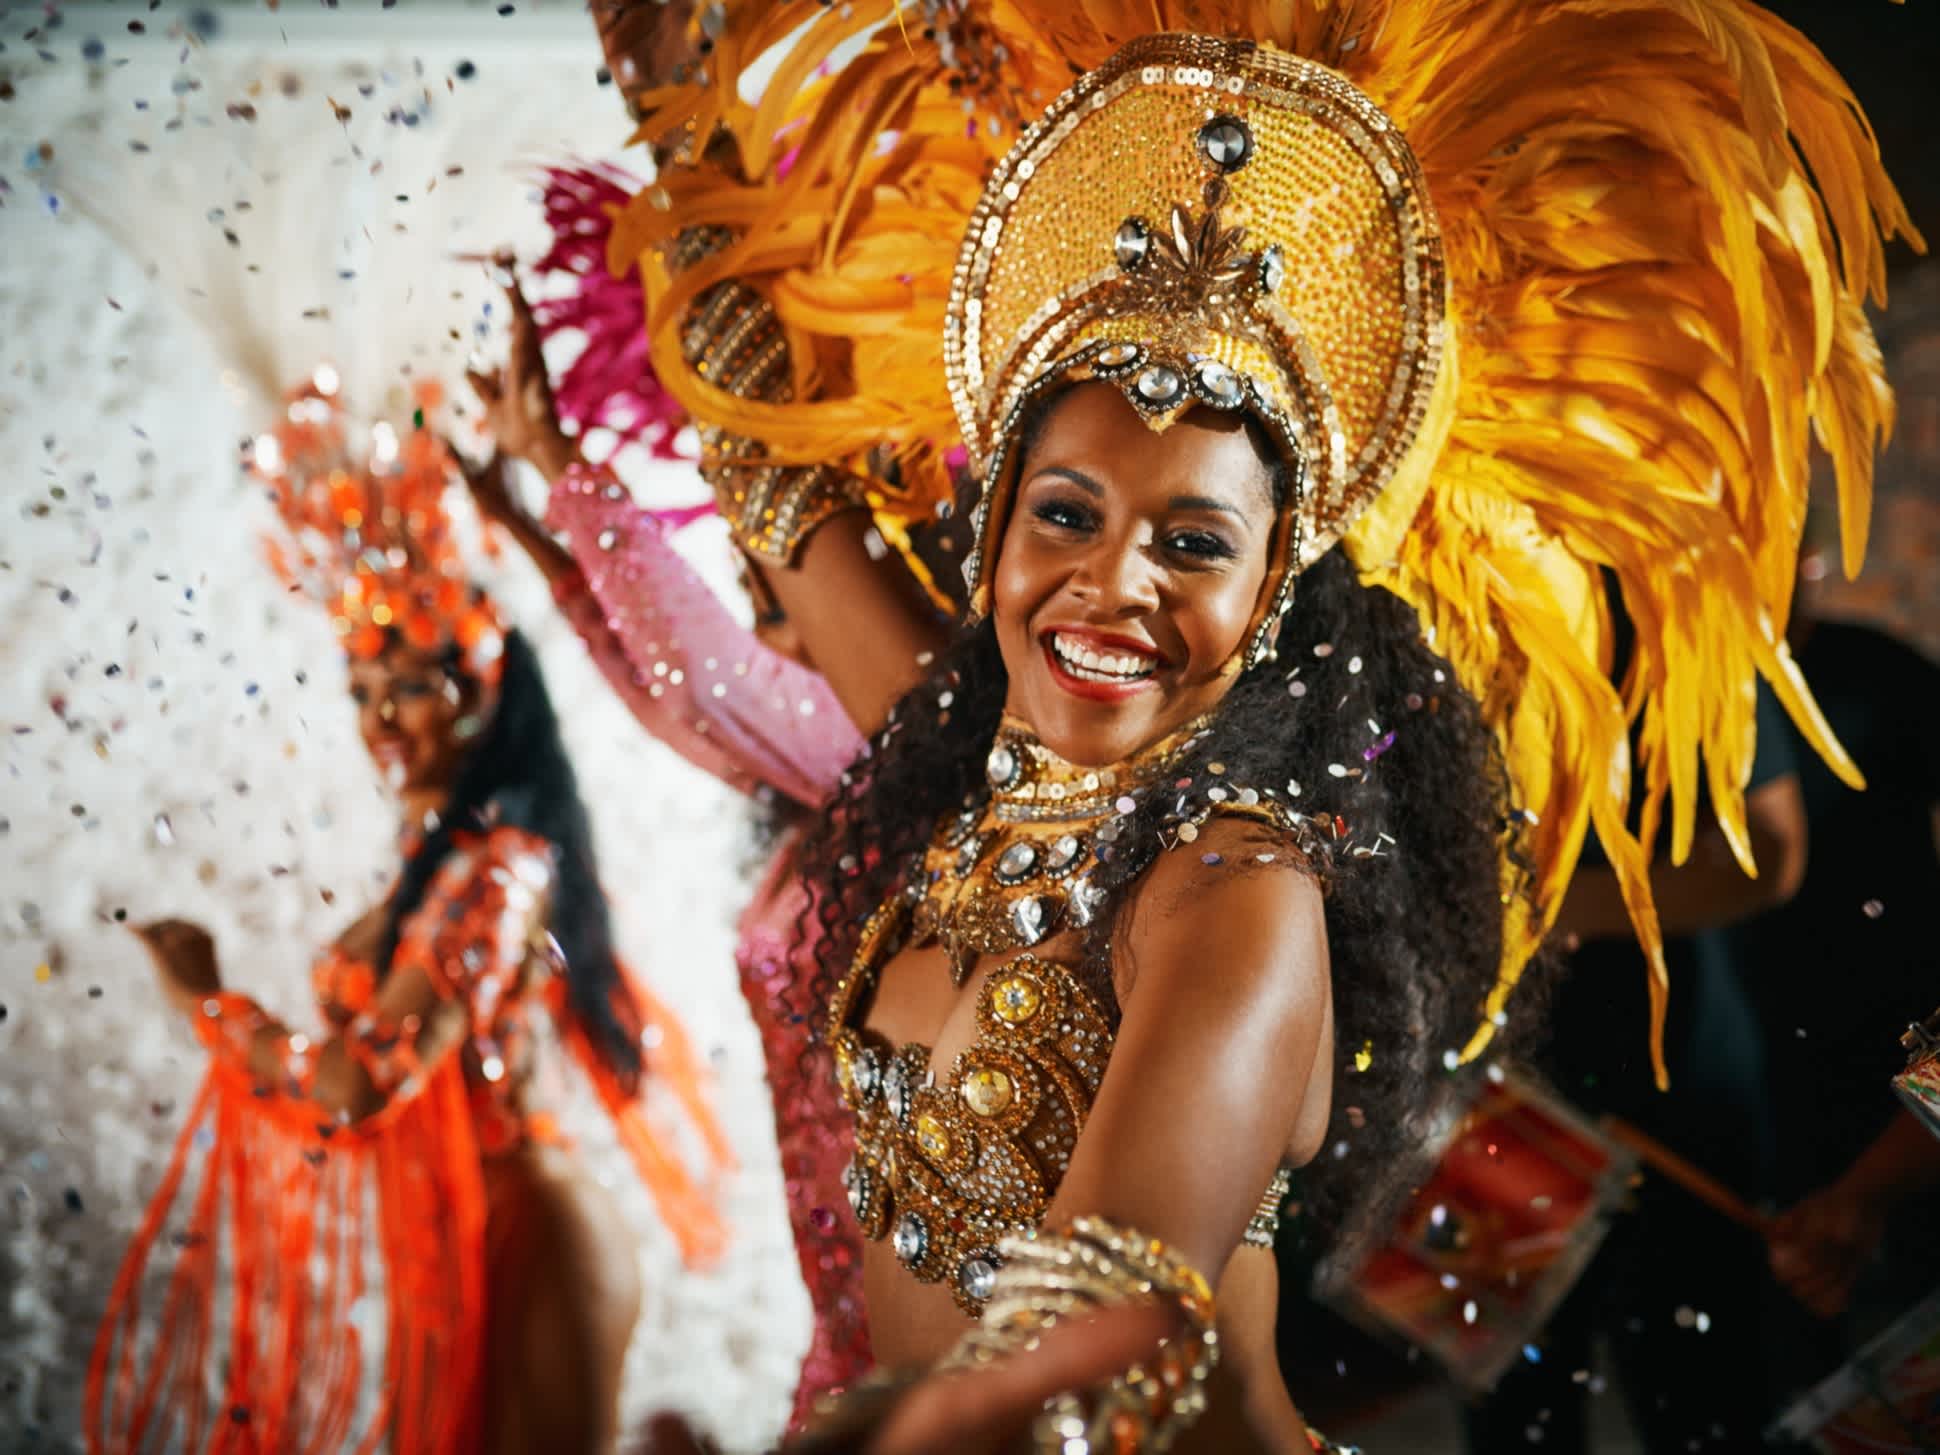 Une danseuse de samba au carnaval de Rio de Janerio, Brésil.

